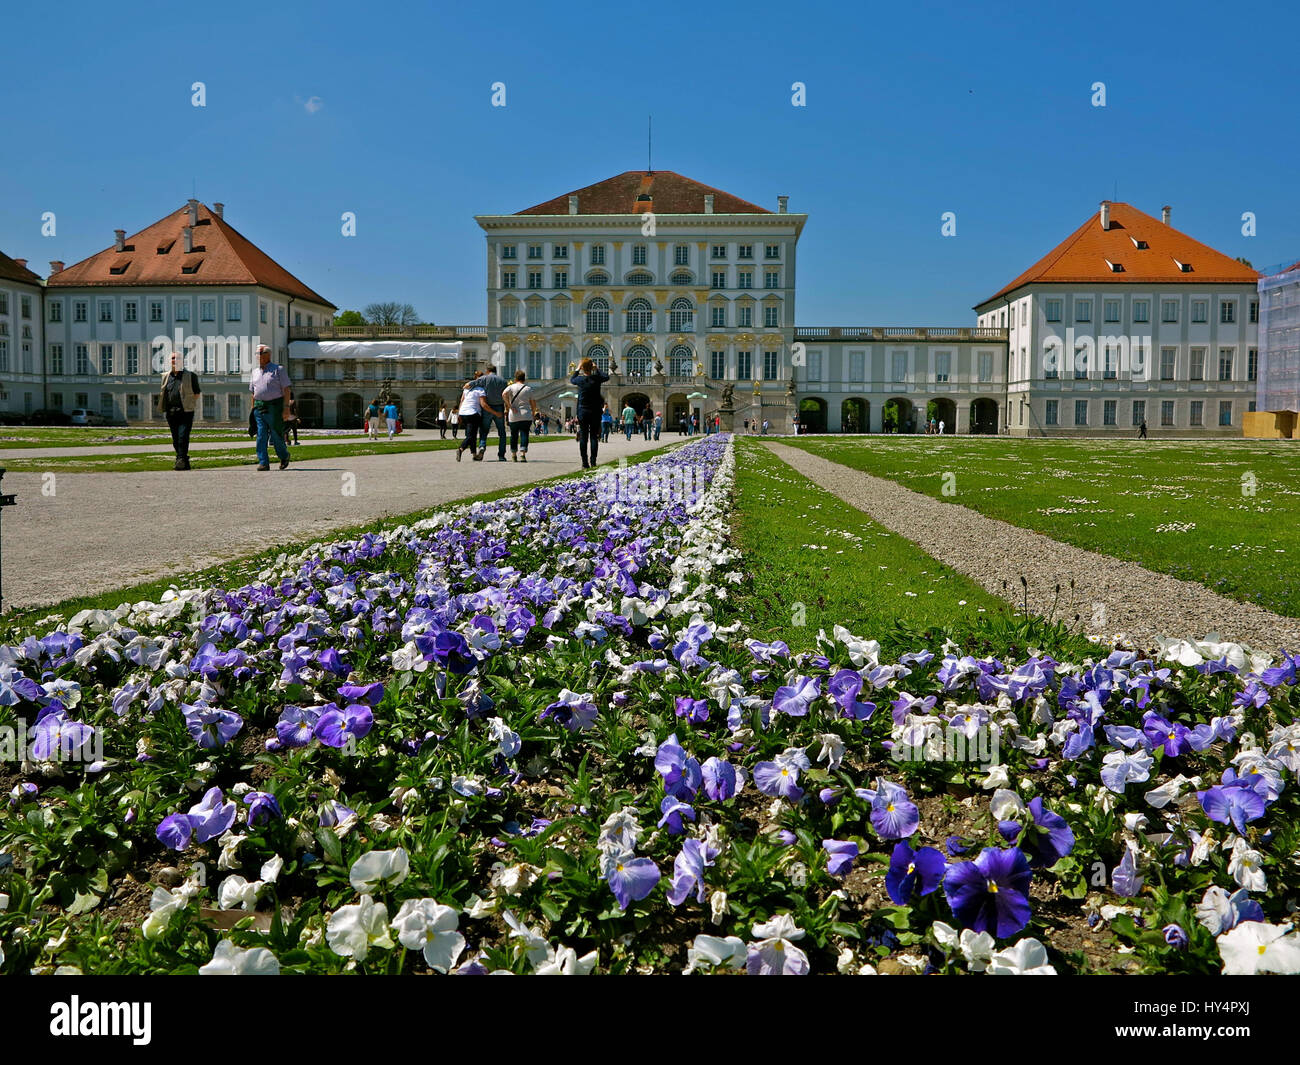 Le Palais Nymphenburg, baroque, construit en 1664-1703 par Agostino Barelli, Effner et Viscardi, espace extérieur avec des massifs de fleurs, les touristes, printemps, Banque D'Images